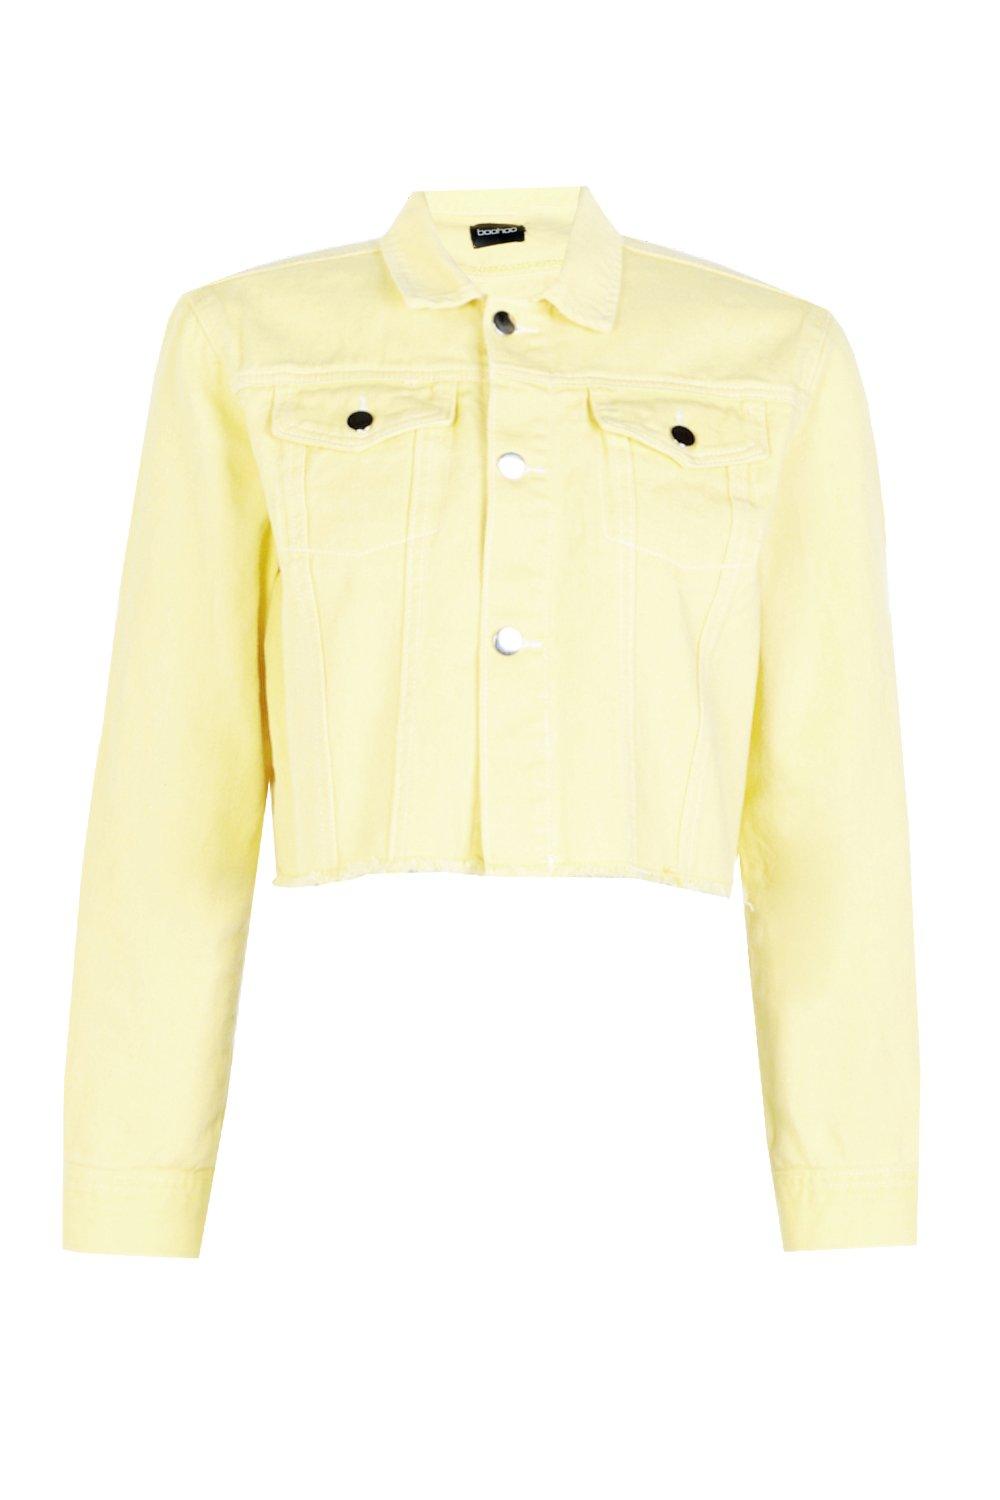 boohoo yellow denim jacket